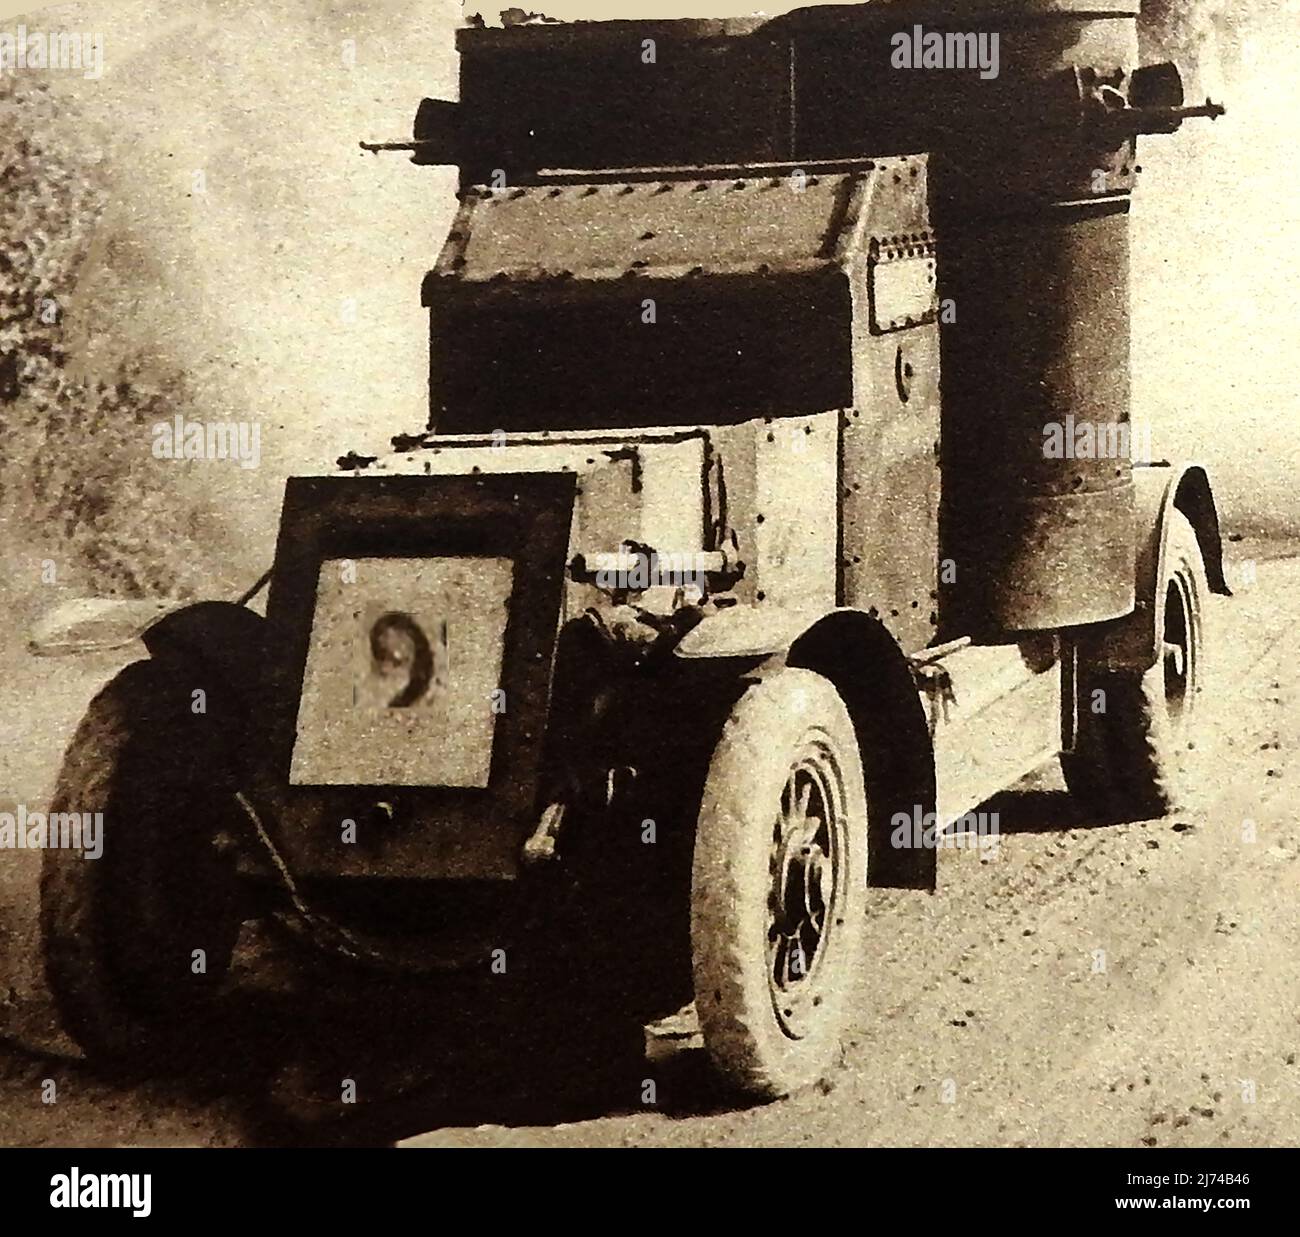 WWI - Ein britischer Panzerwagen, der 1918 auf der Somme fotografiert wurde ==== WWI - ein britischer Panzerwagen, der 1918 an der Somme fotografiert wurde - ======== première Guerre mondiale - Une voiture blindée britannique photographiée sur la Somme en 1918 Stockfoto